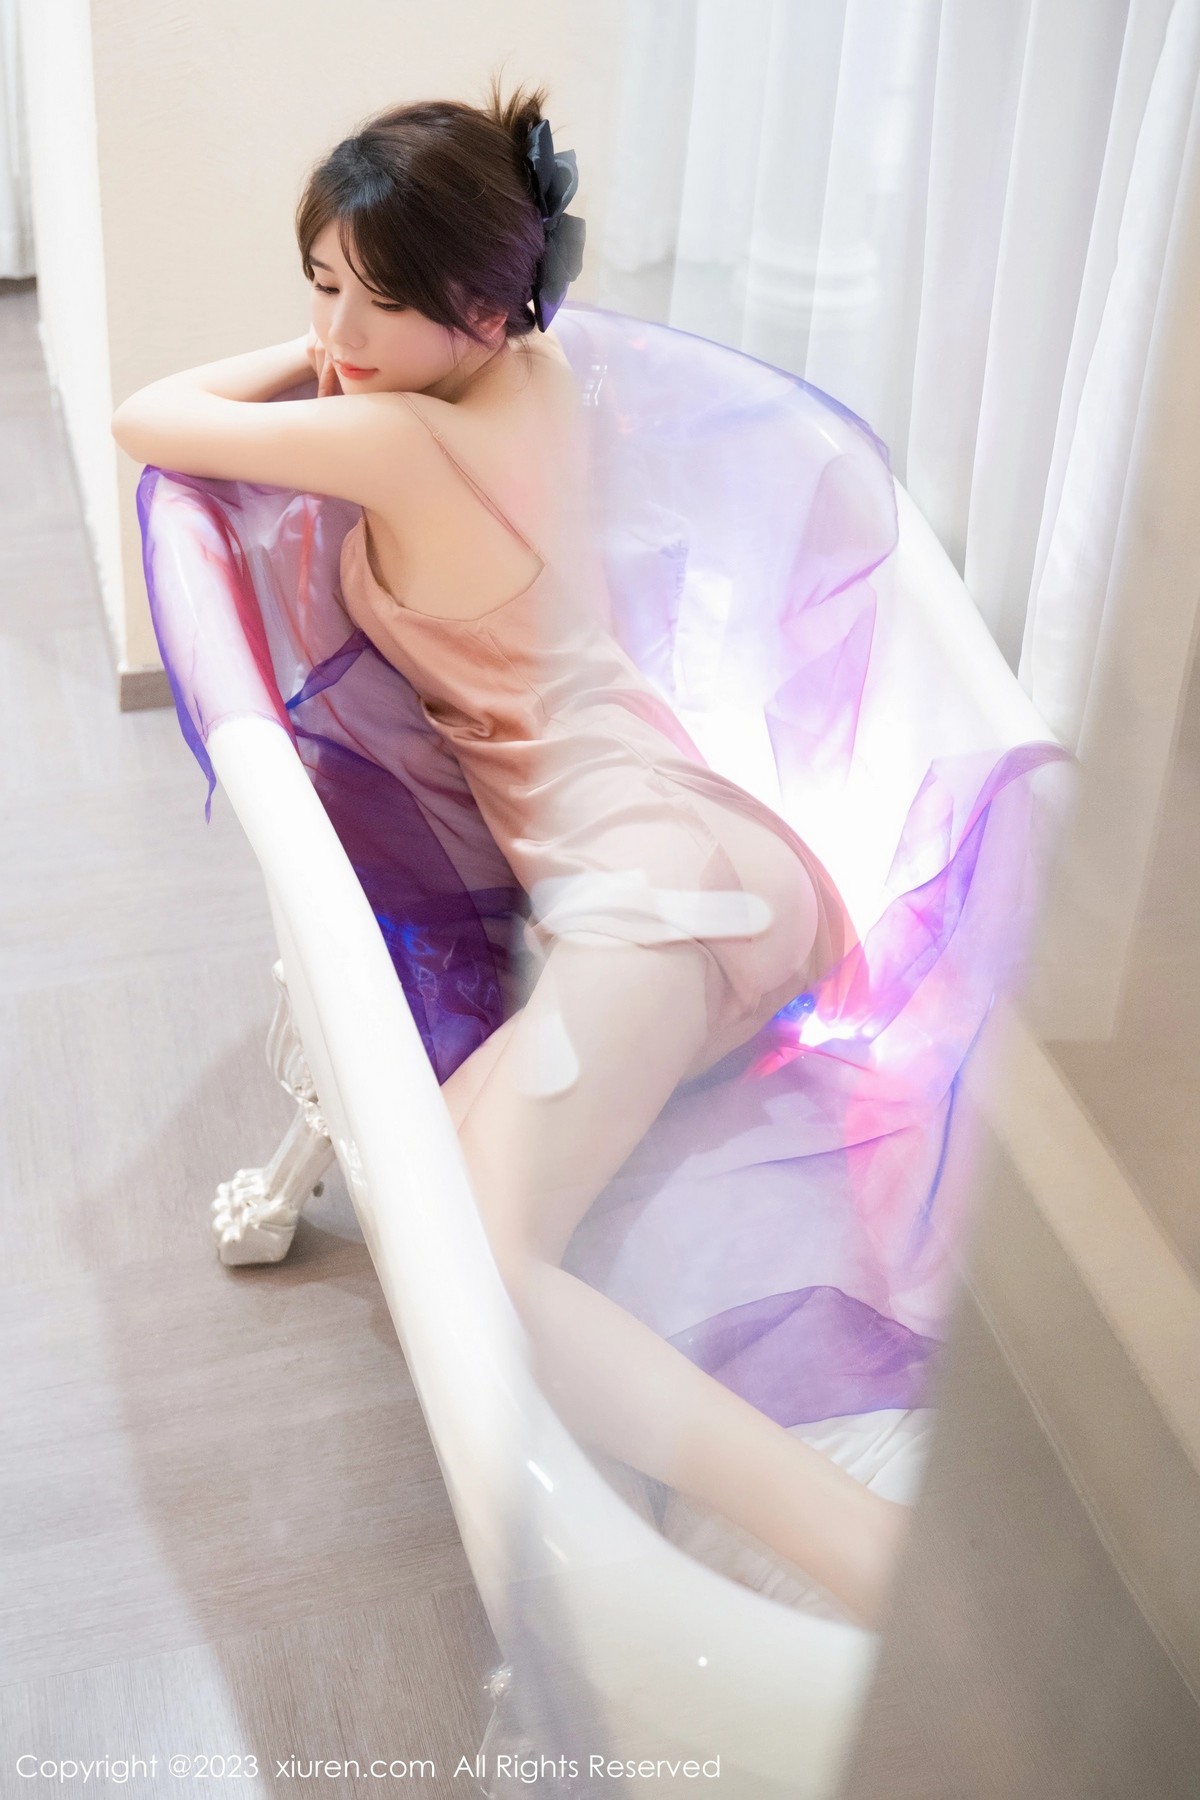 婠婠么秀绝美身材迷人诱惑写真浴缸美腿美女套图